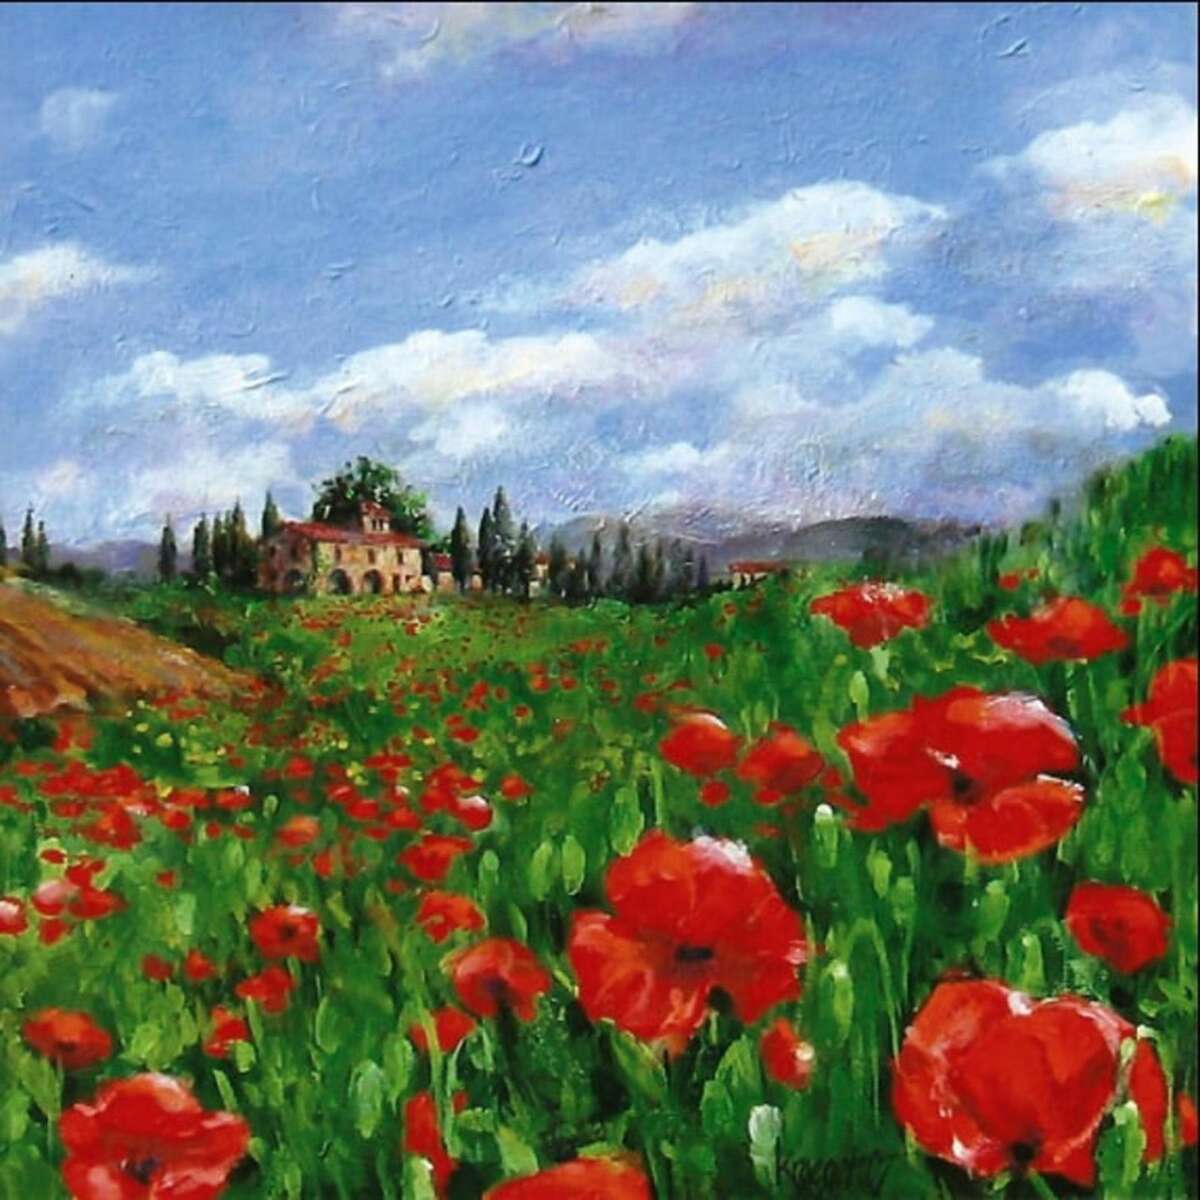 "Poppies, Tuscany"